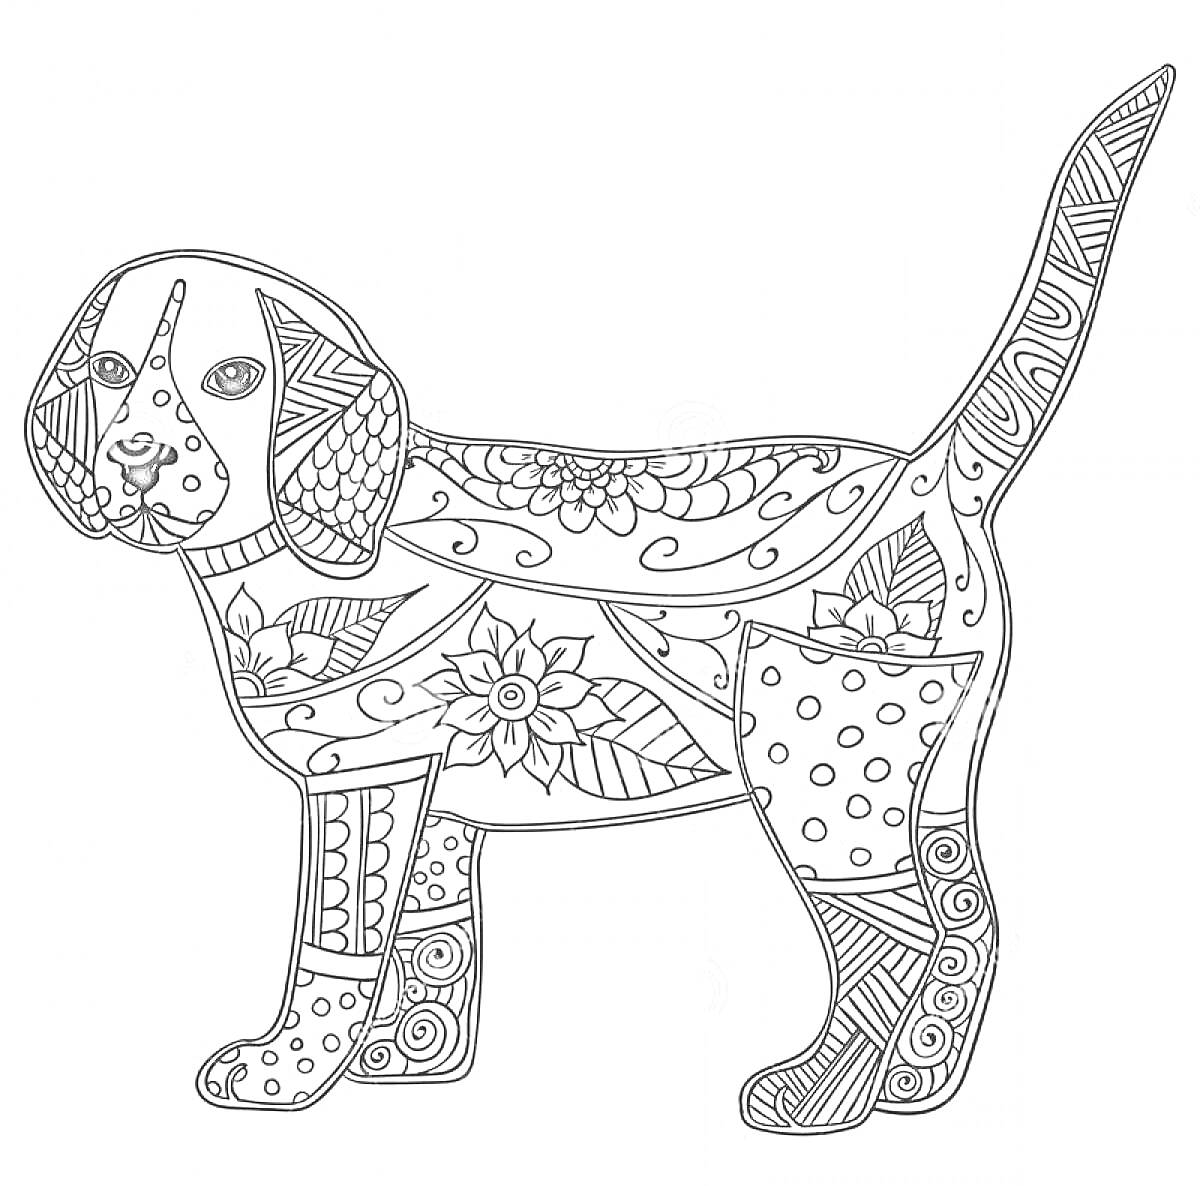 Раскраска антистресс с изображением собаки, украшенной цветочными и геометрическими узорами